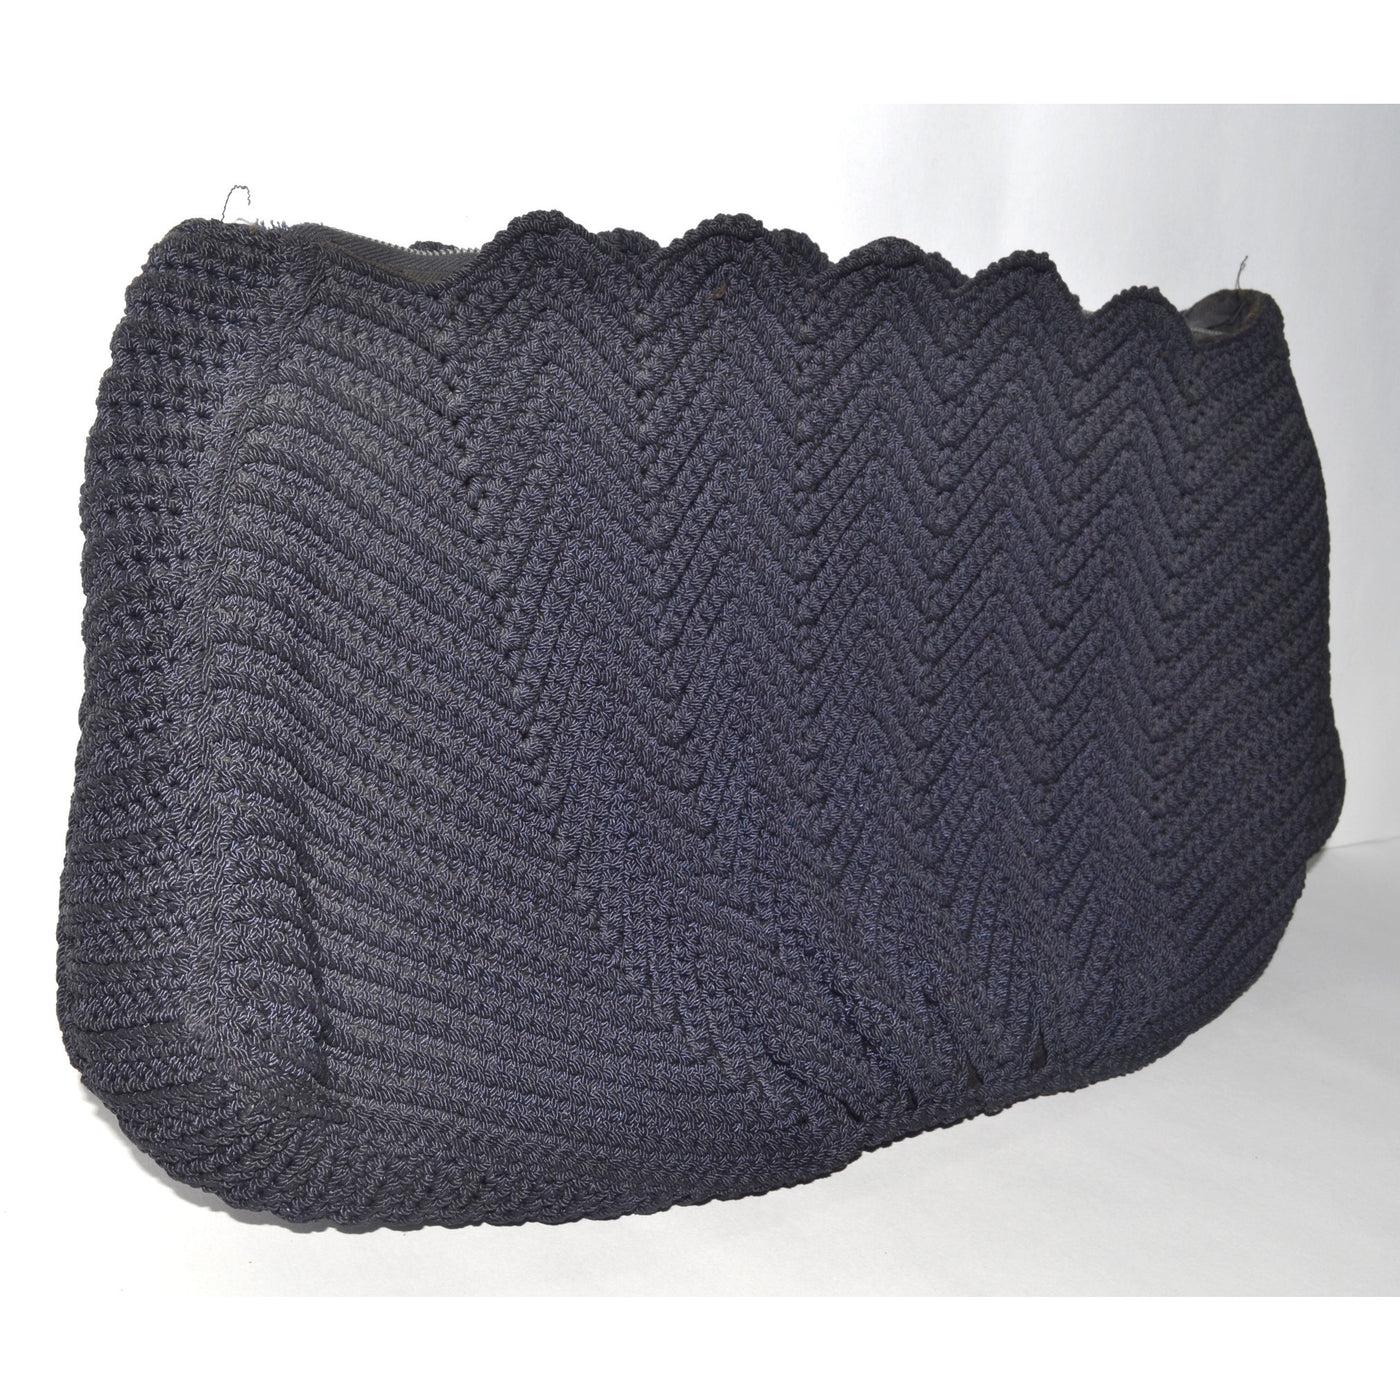 Vintage Black Crochet Fan Clutch Purse